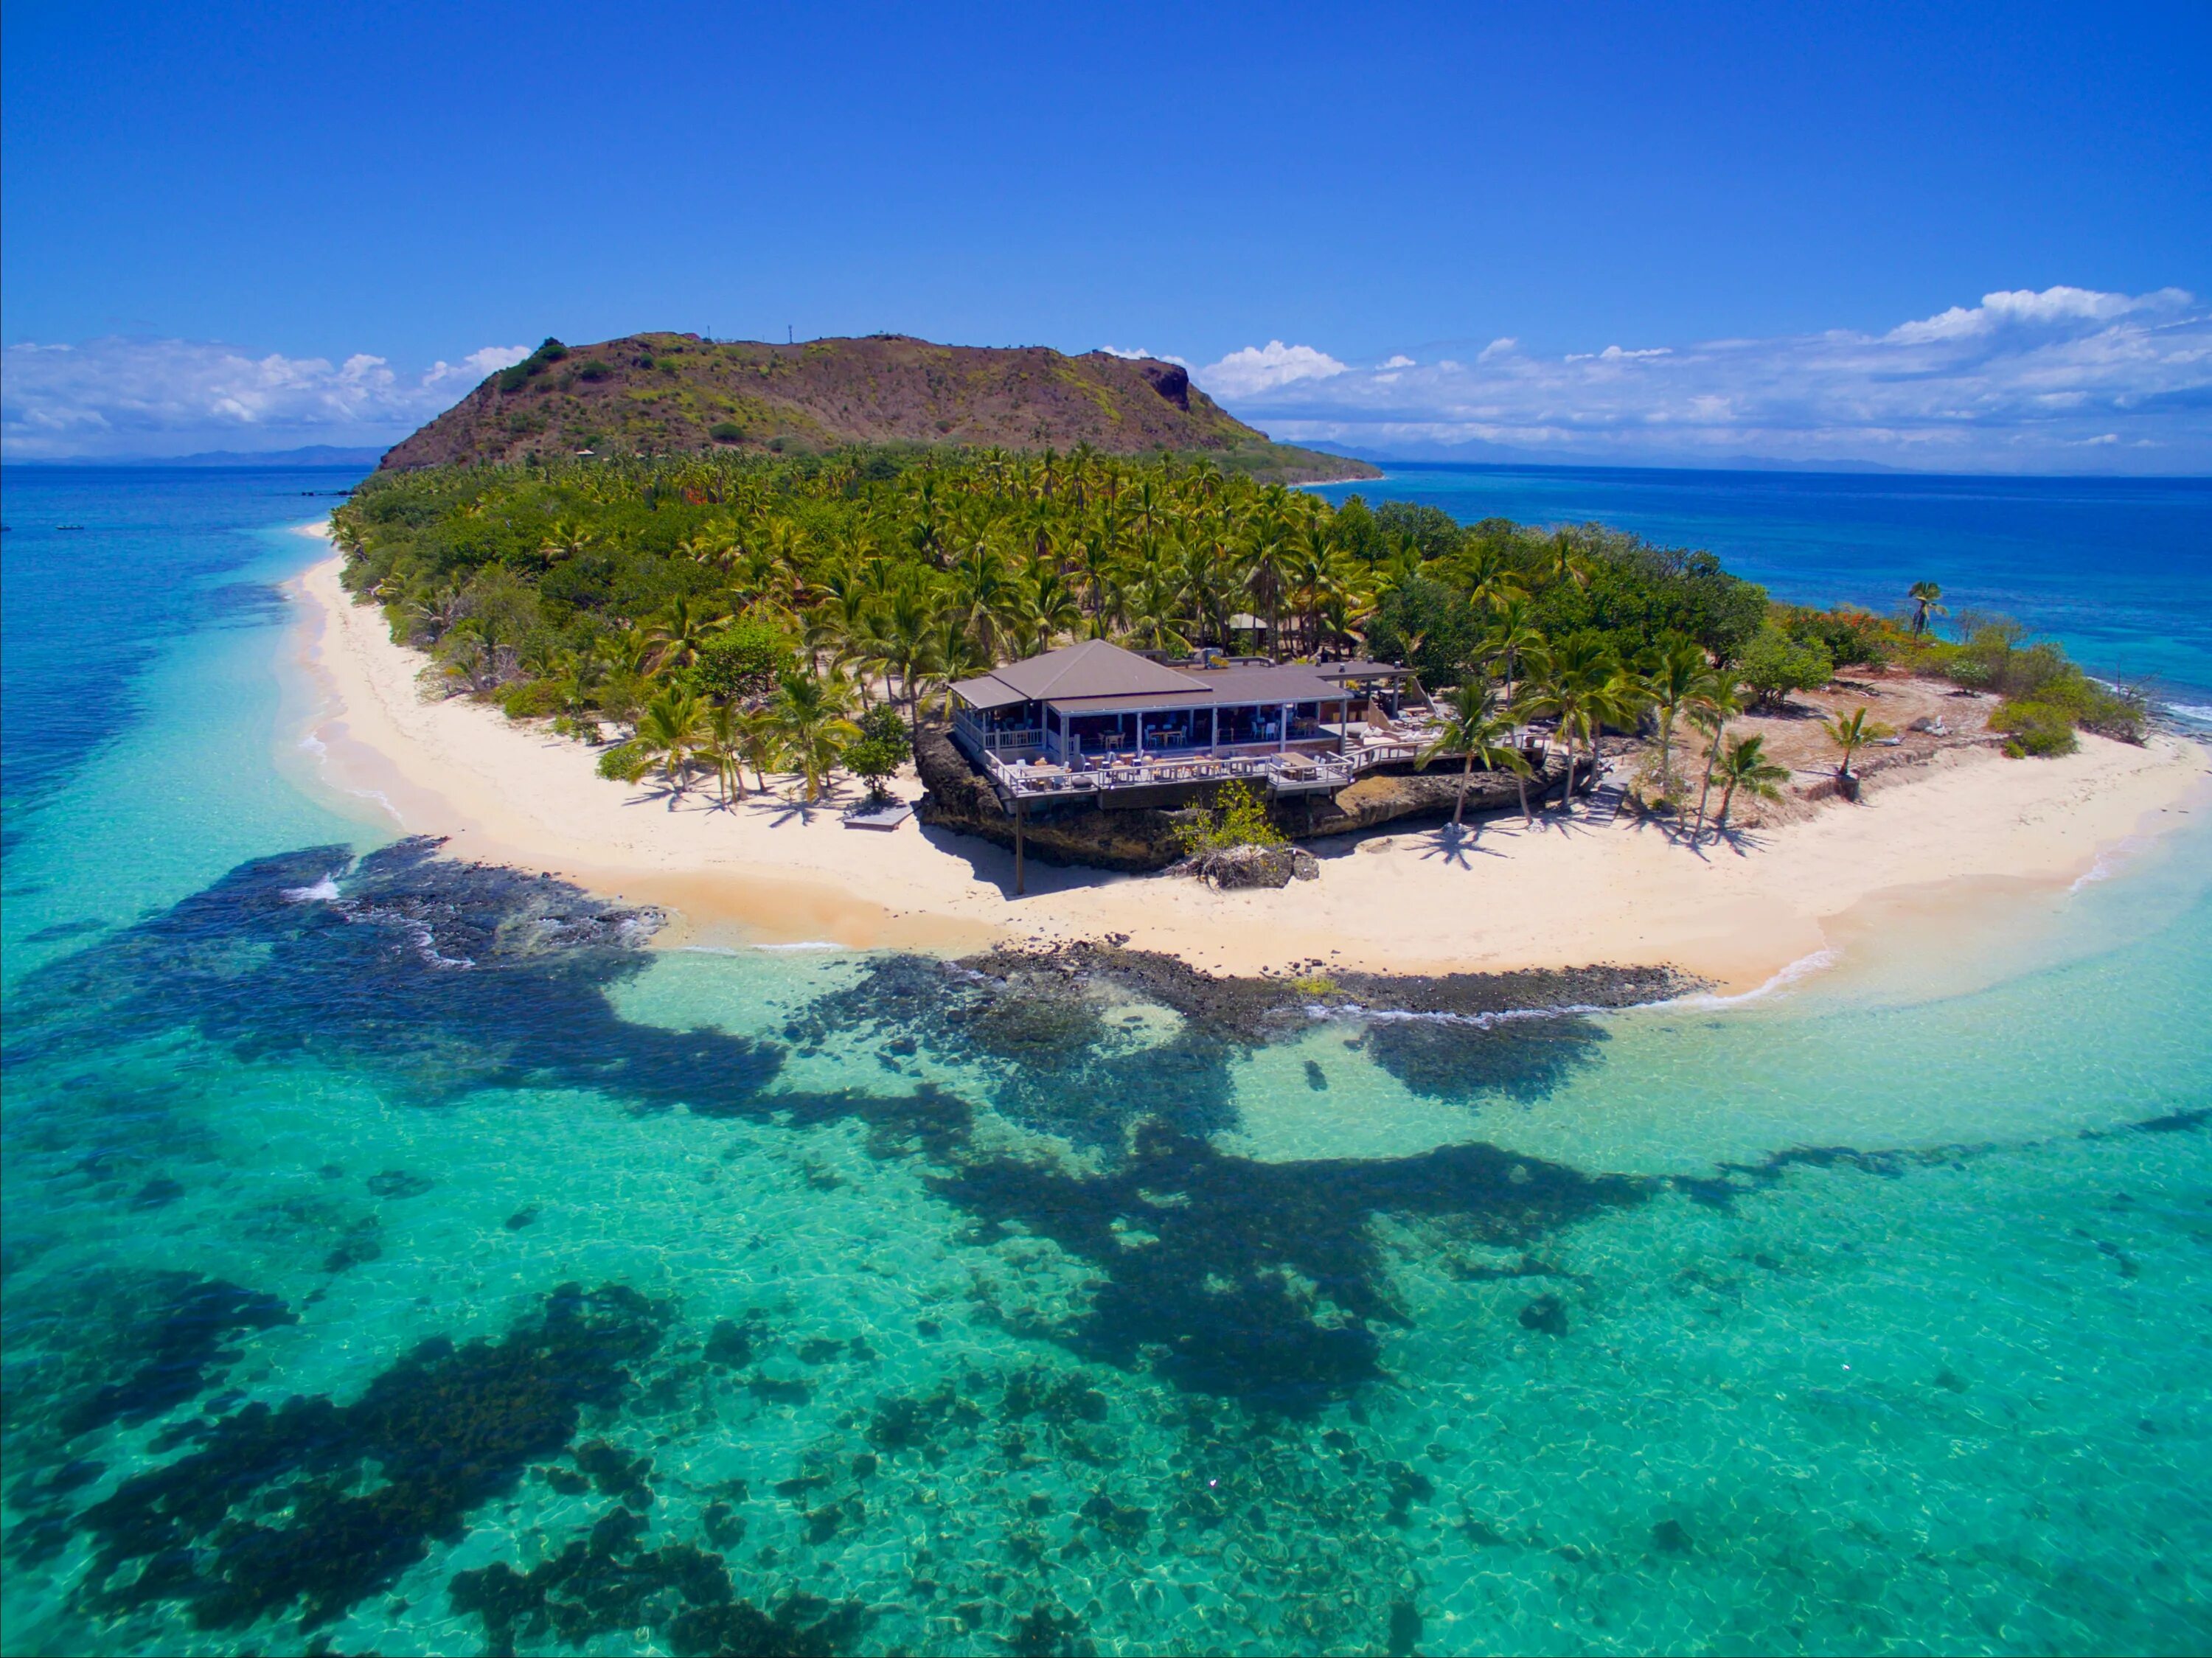 Второй остров в мире. Острова Лау, Фиджи. Остров Монурики. Острова Ясава Фиджи. Остров Лаукала Фиджи.